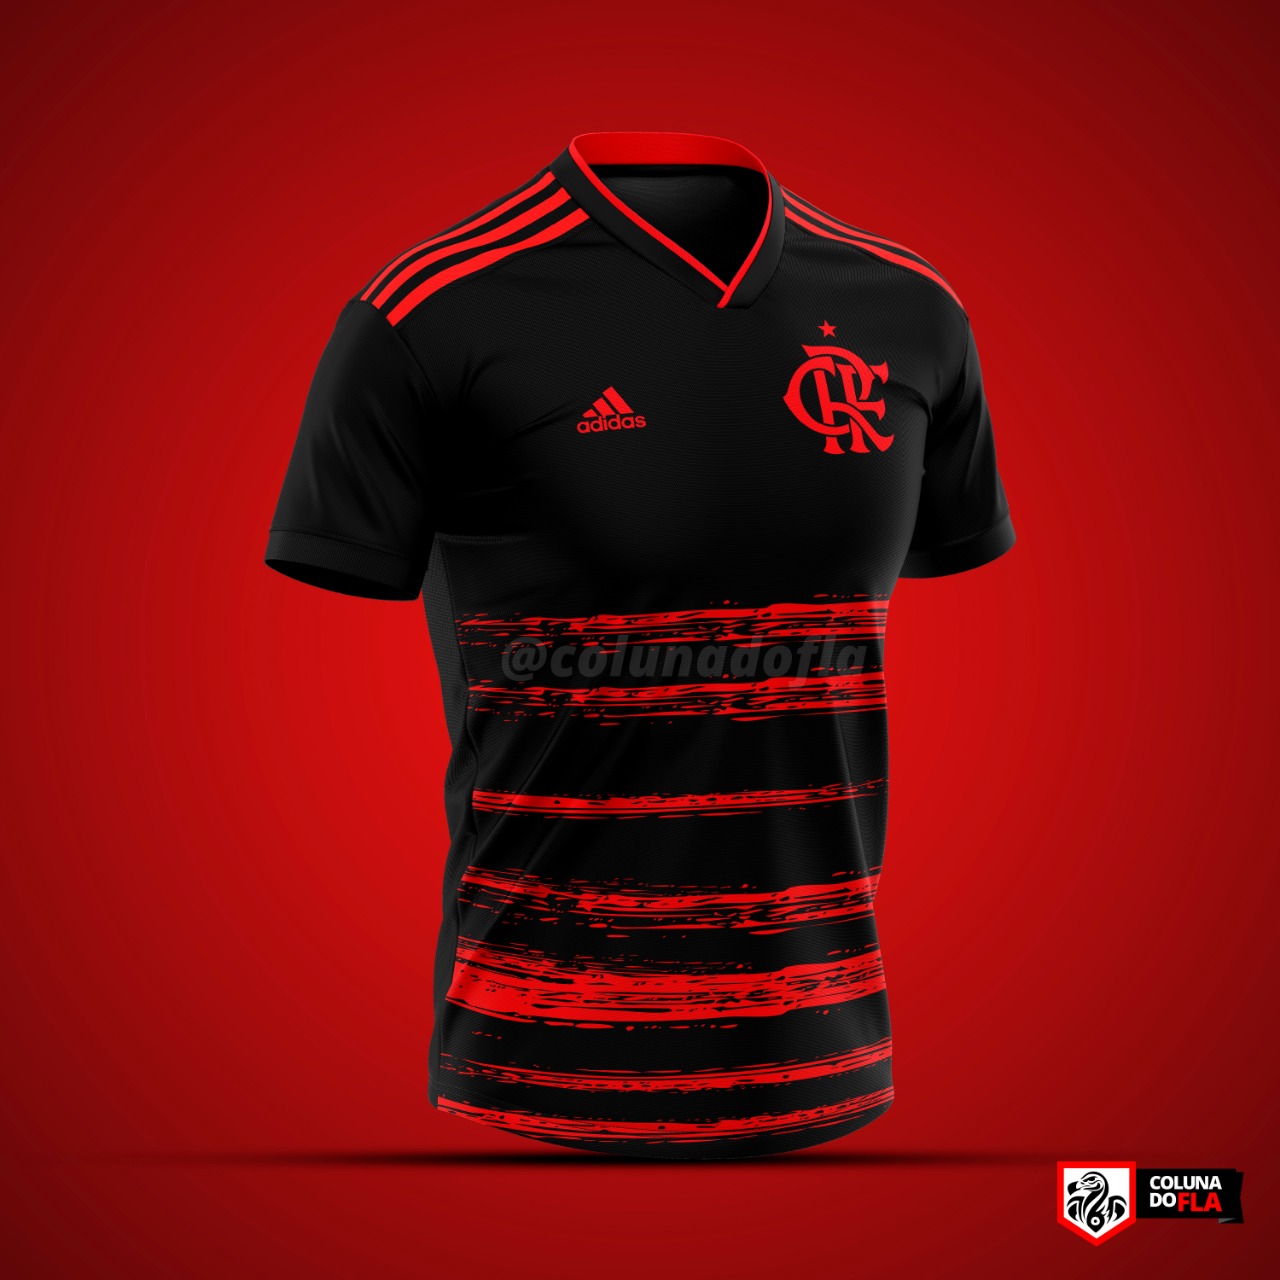 Process Wither auditorium Modelo aprovado? Confira a projeção do novo terceiro uniforme do Flamengo -  Flamengo - Notícias e jogo do Flamengo - Coluna do Fla